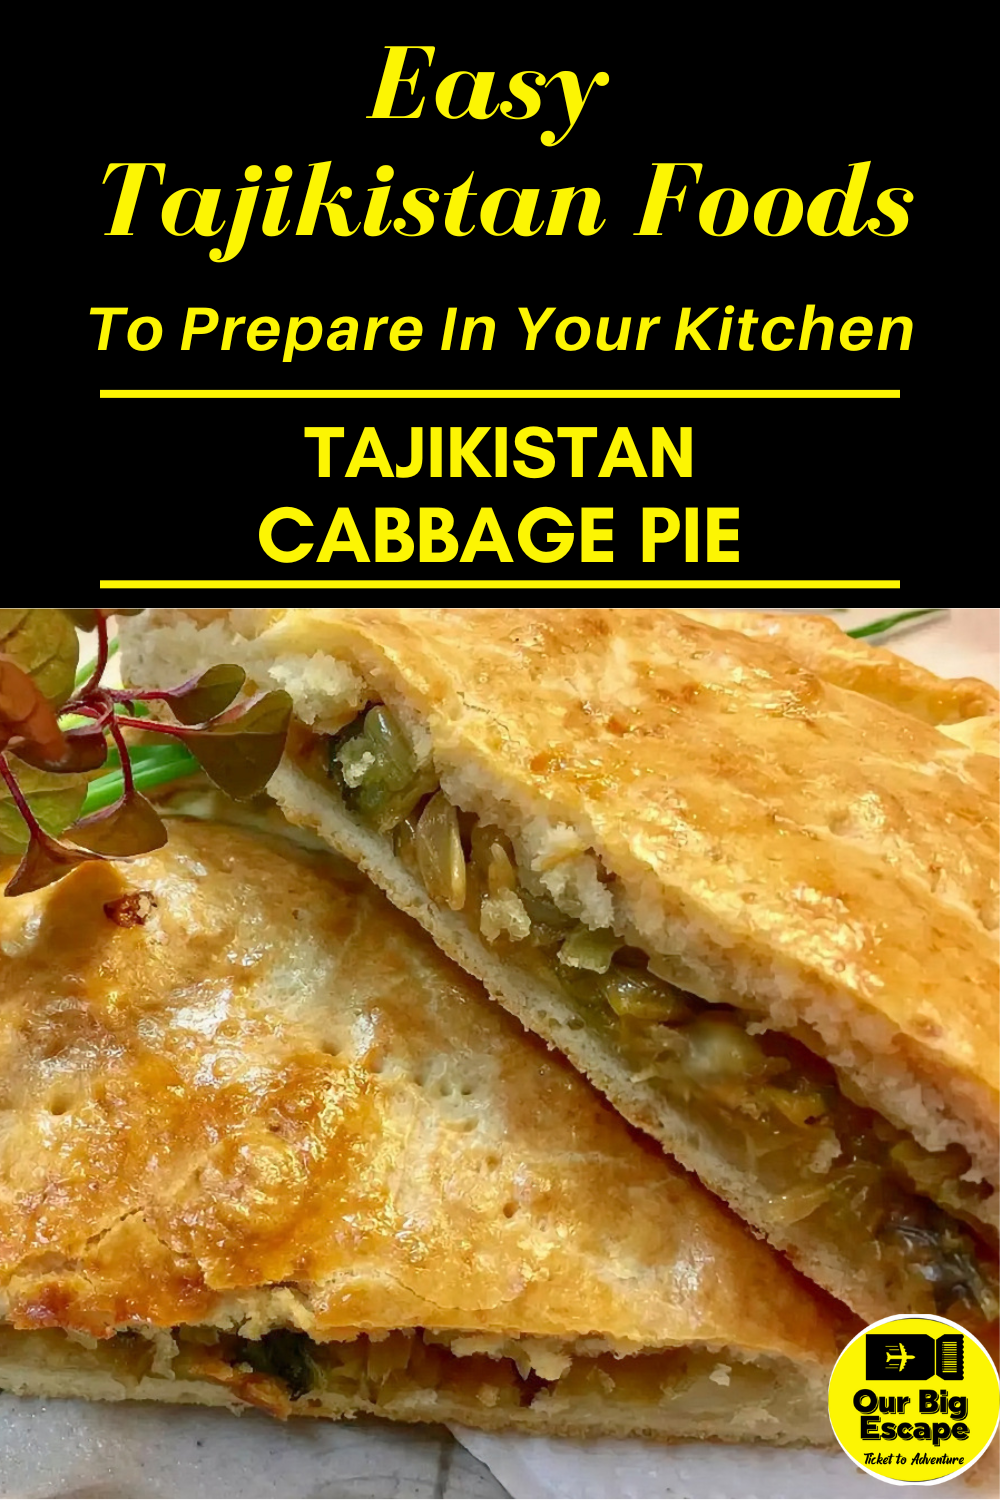 Tajikistan Cabbage Pie - 7 Easy Tajikistan Foods To Prepare In Your Kitchen